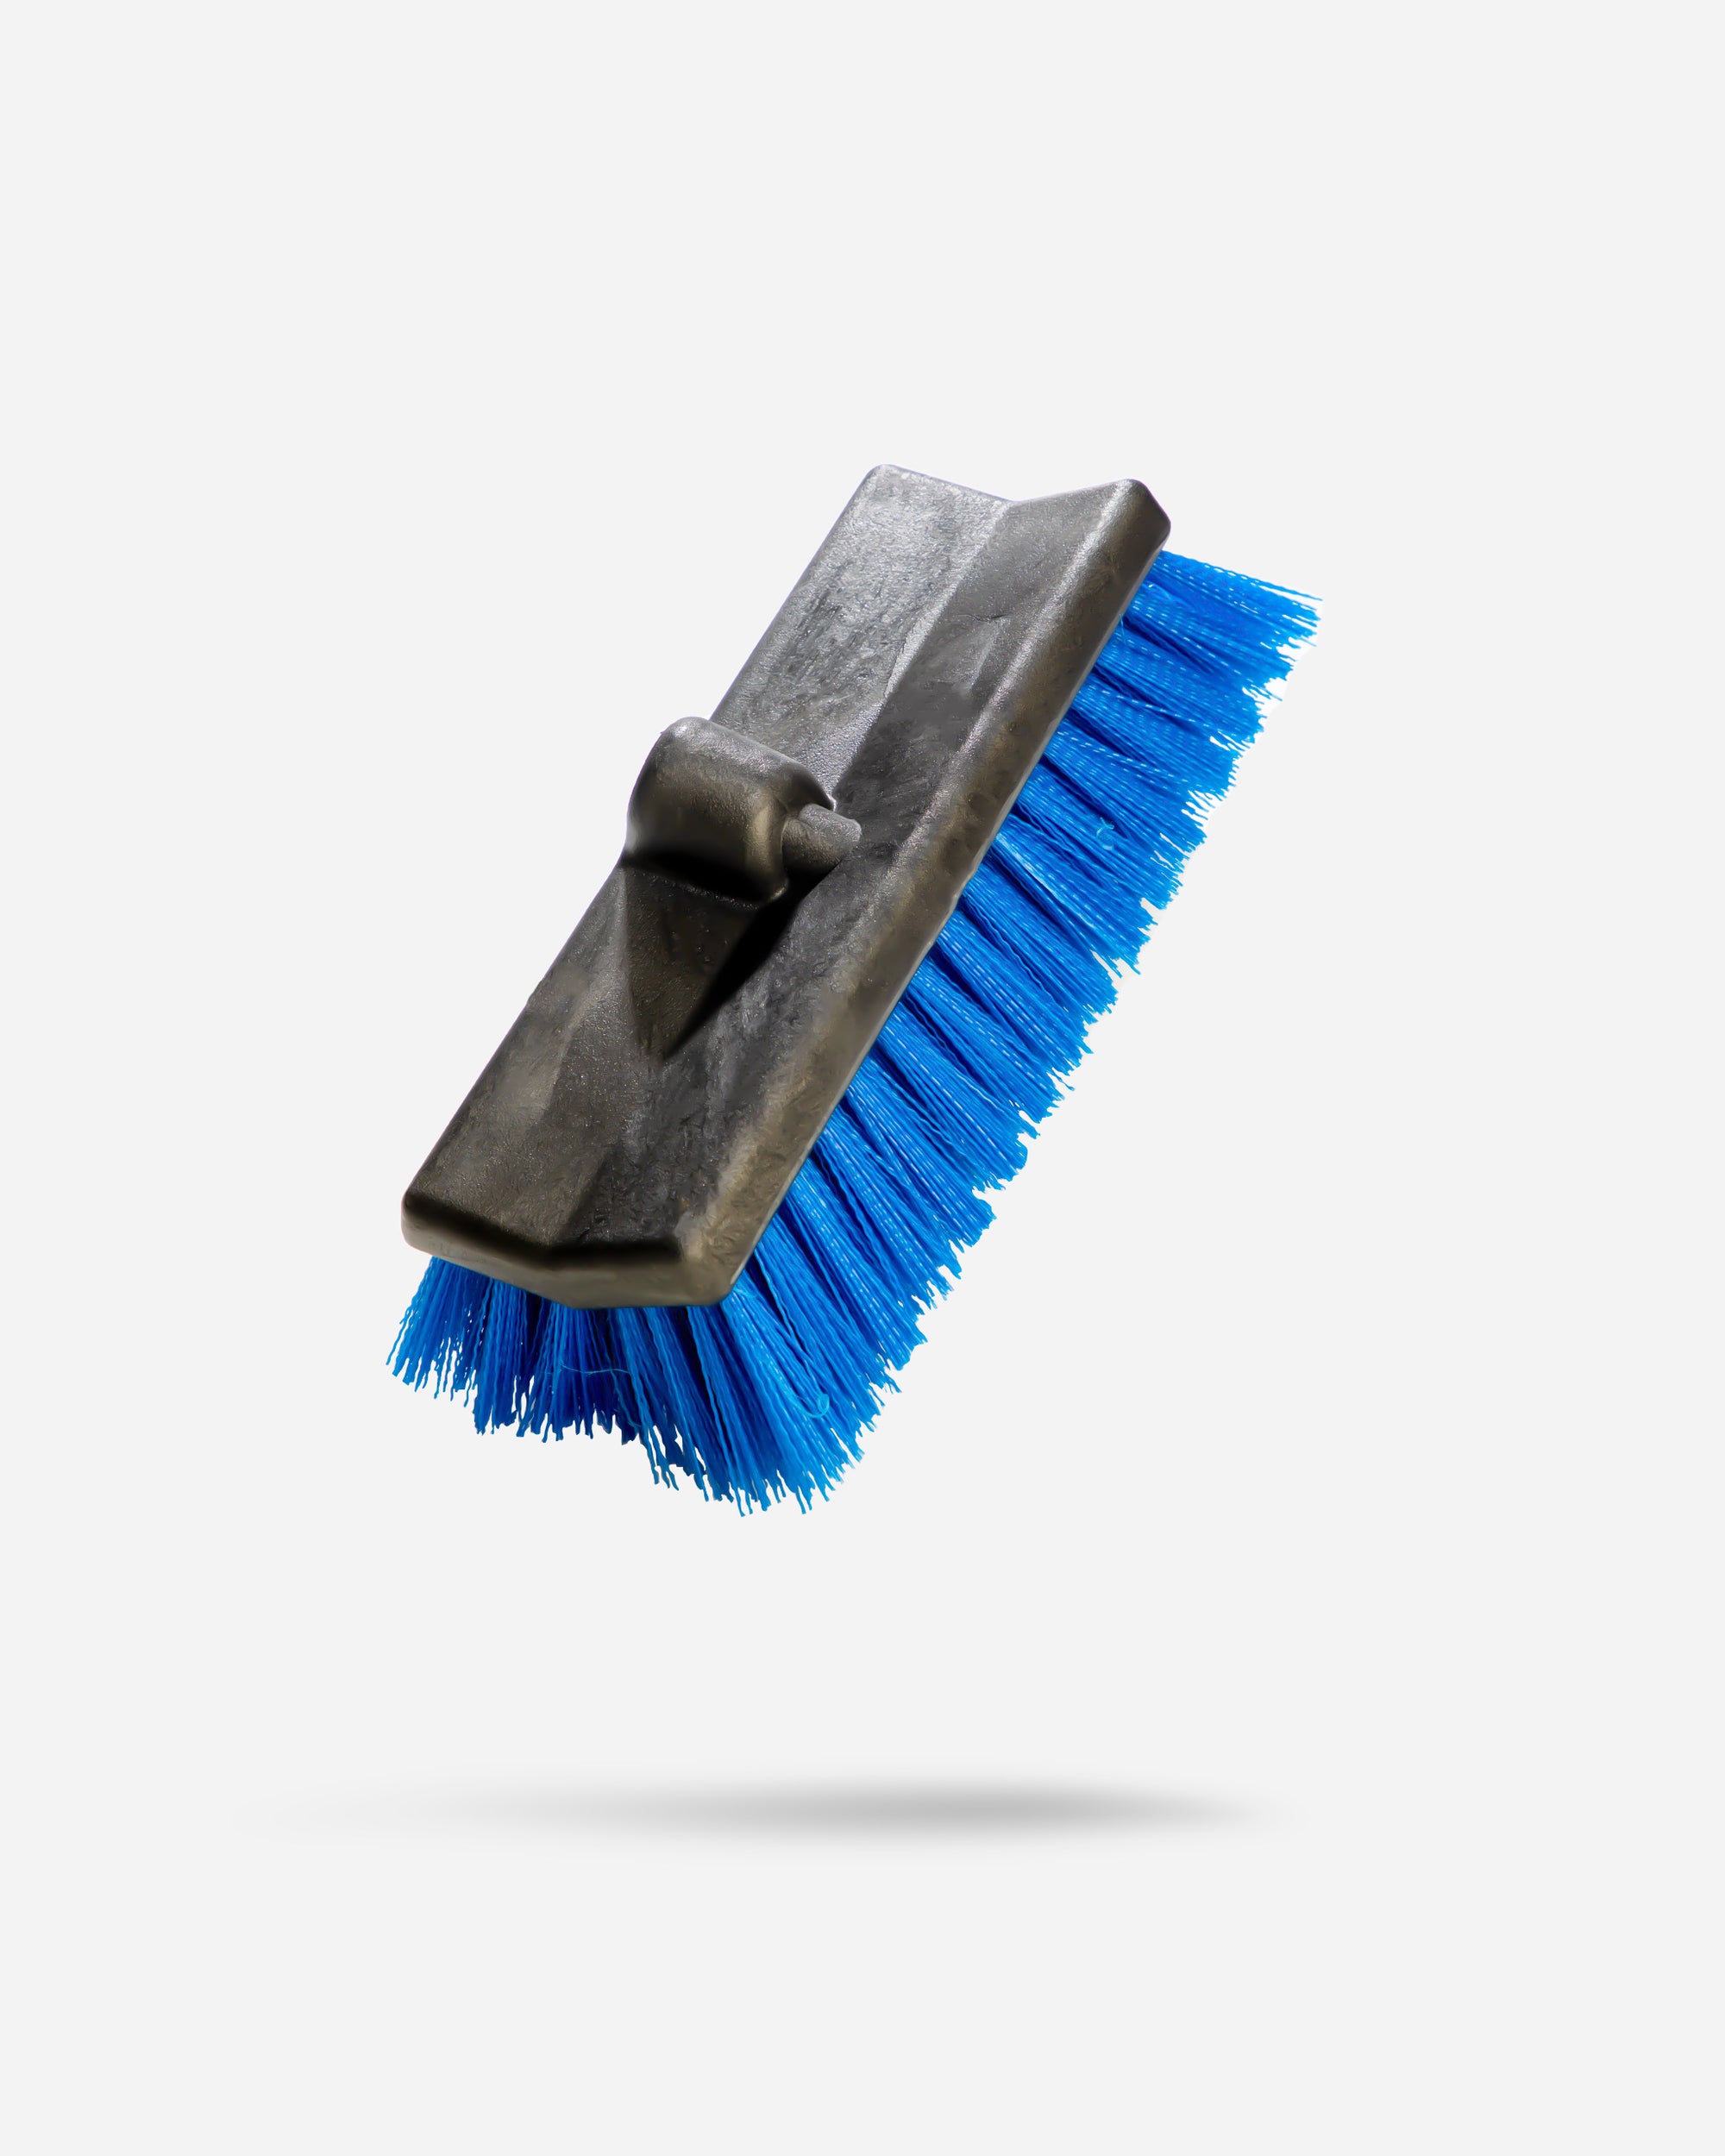 Adam's Wheel Brush – Car Detailing Brush for Wheel Cleaner & Rim Cleaner  Detailing Supplies | Soft Bristles & Rubberized Short Handle Brush Kit for